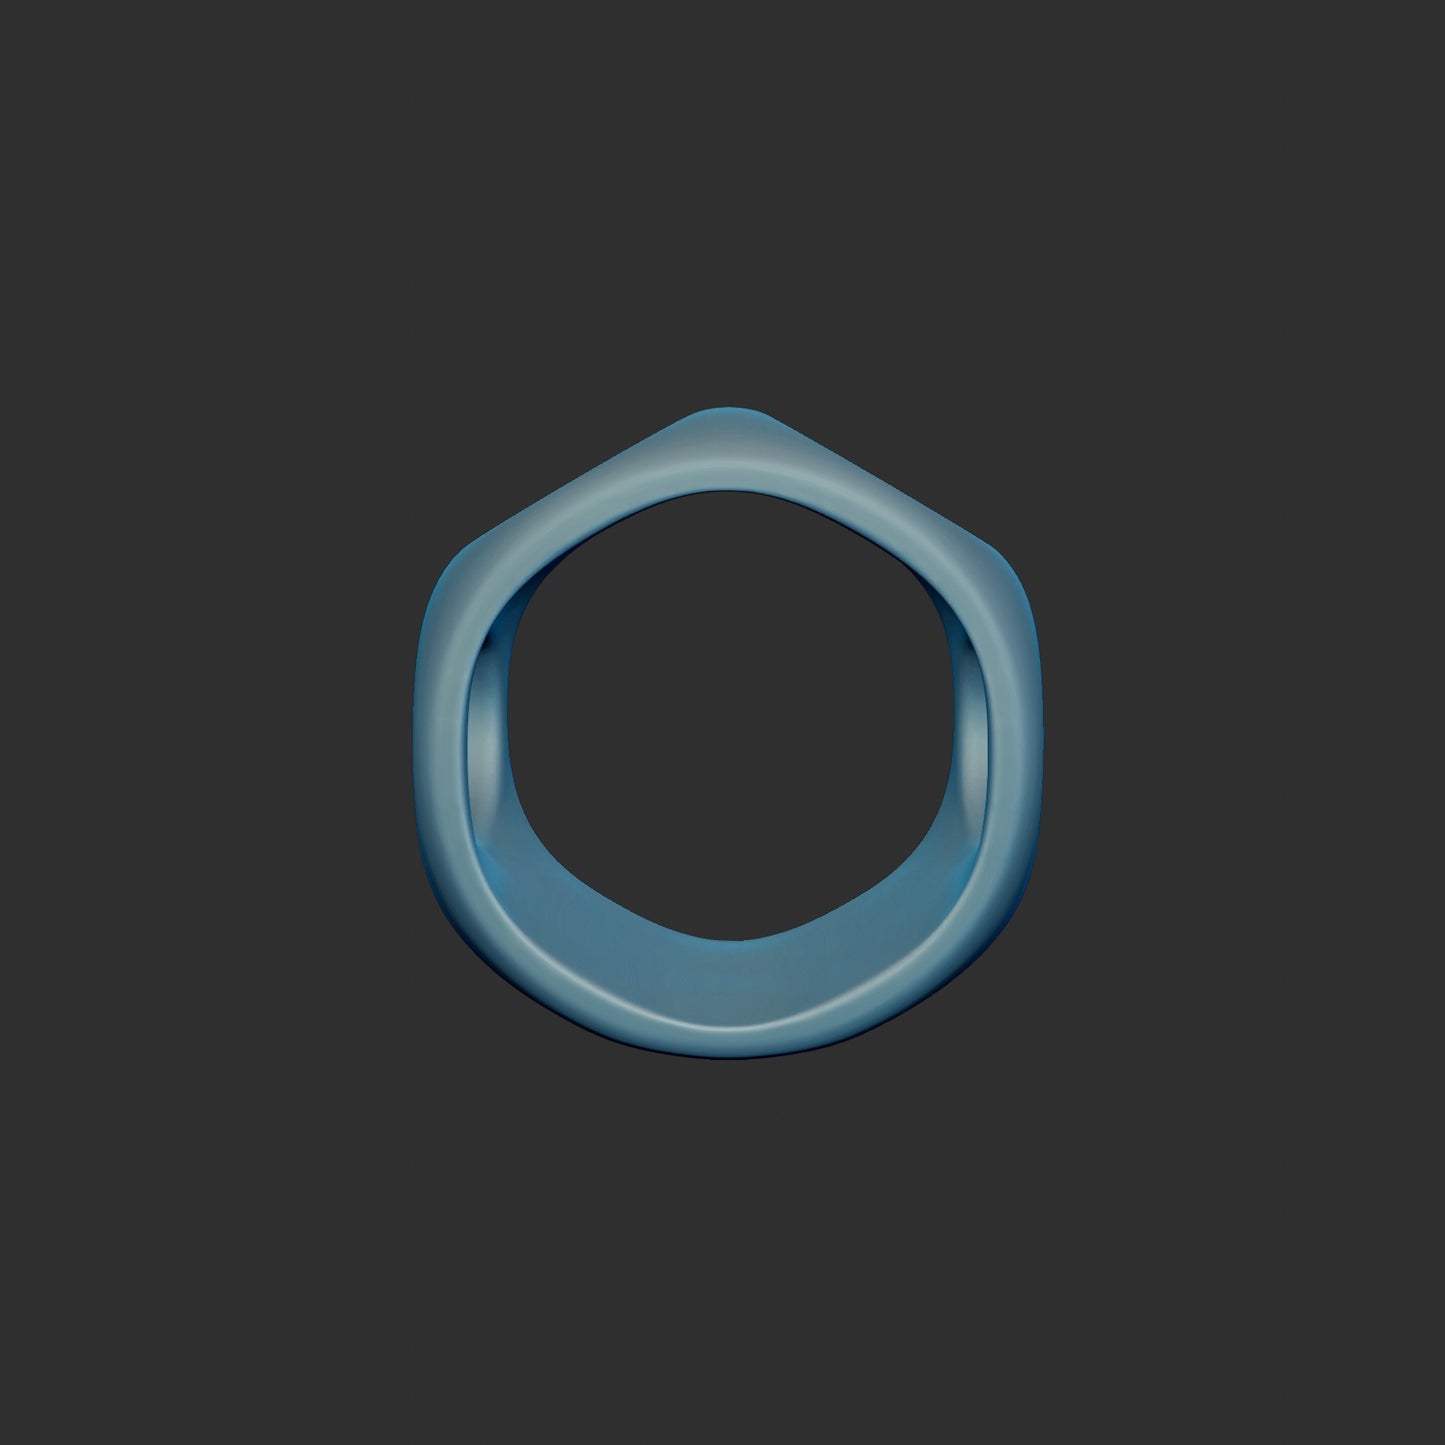 Abstract Circle Ring 3d Model